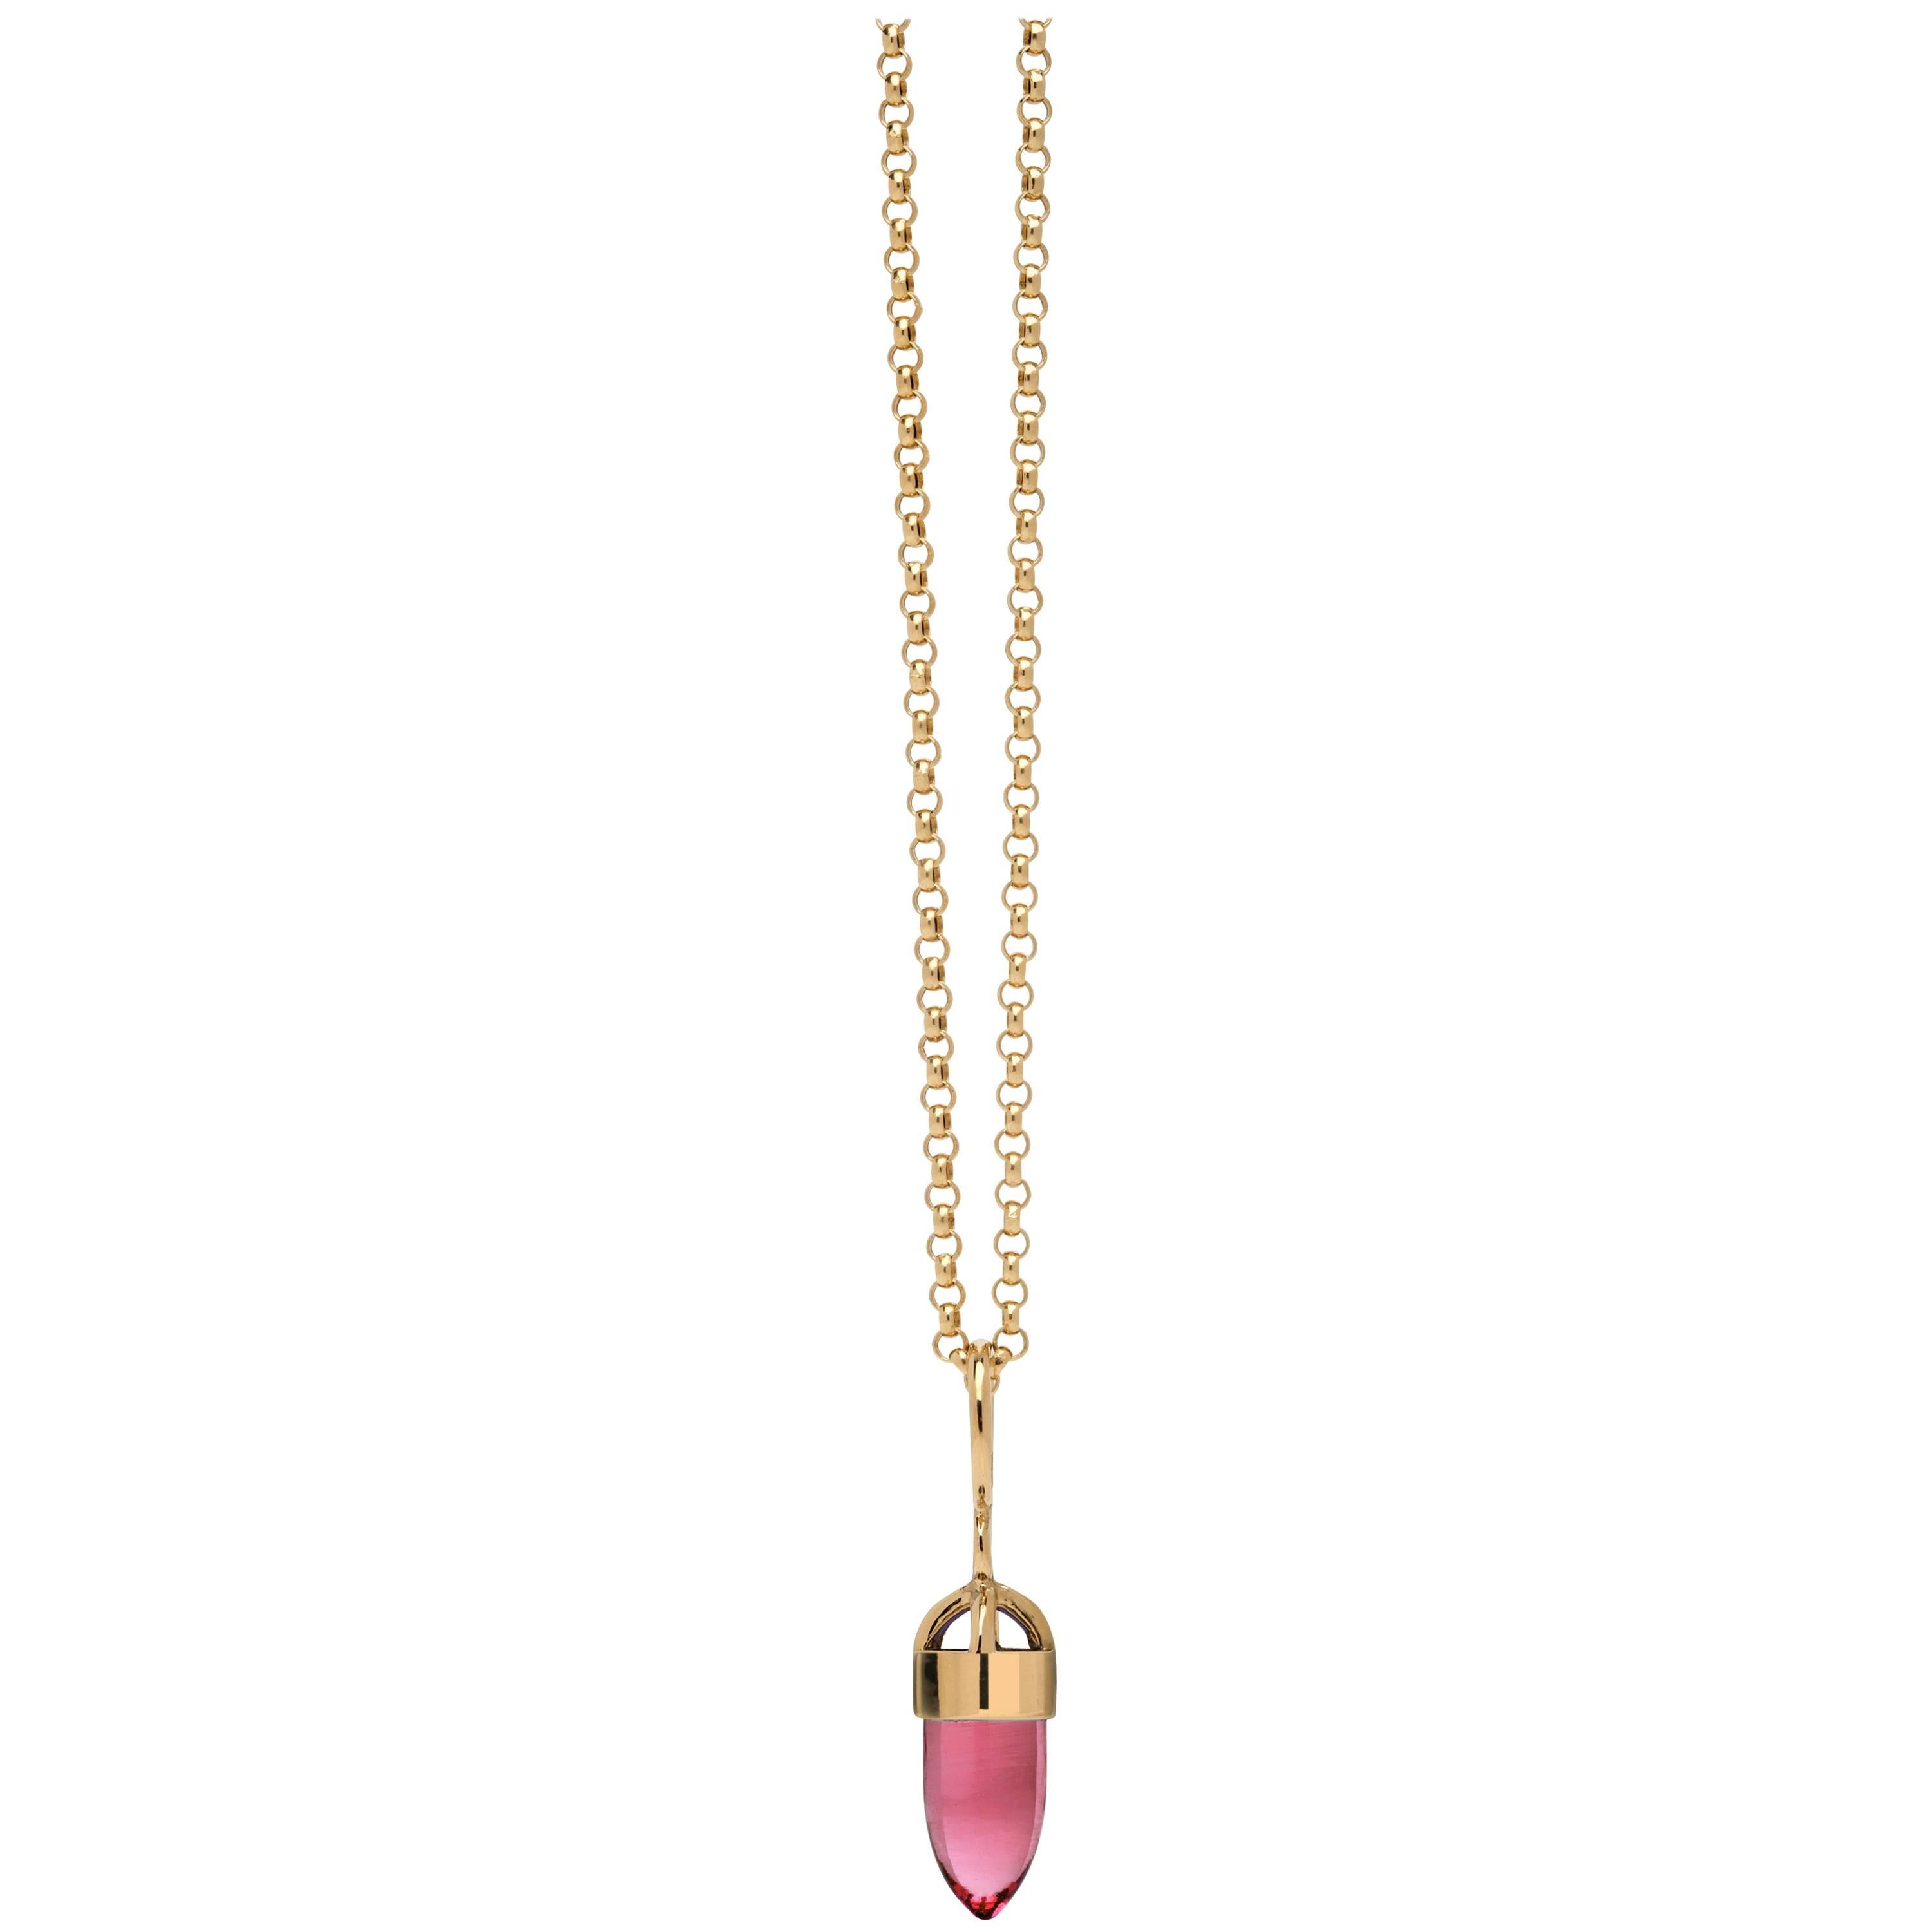 MAVIADA's Moderne minimalistische Halskette mit rosa Stein-Anhänger aus 18 Karat Gelbgold